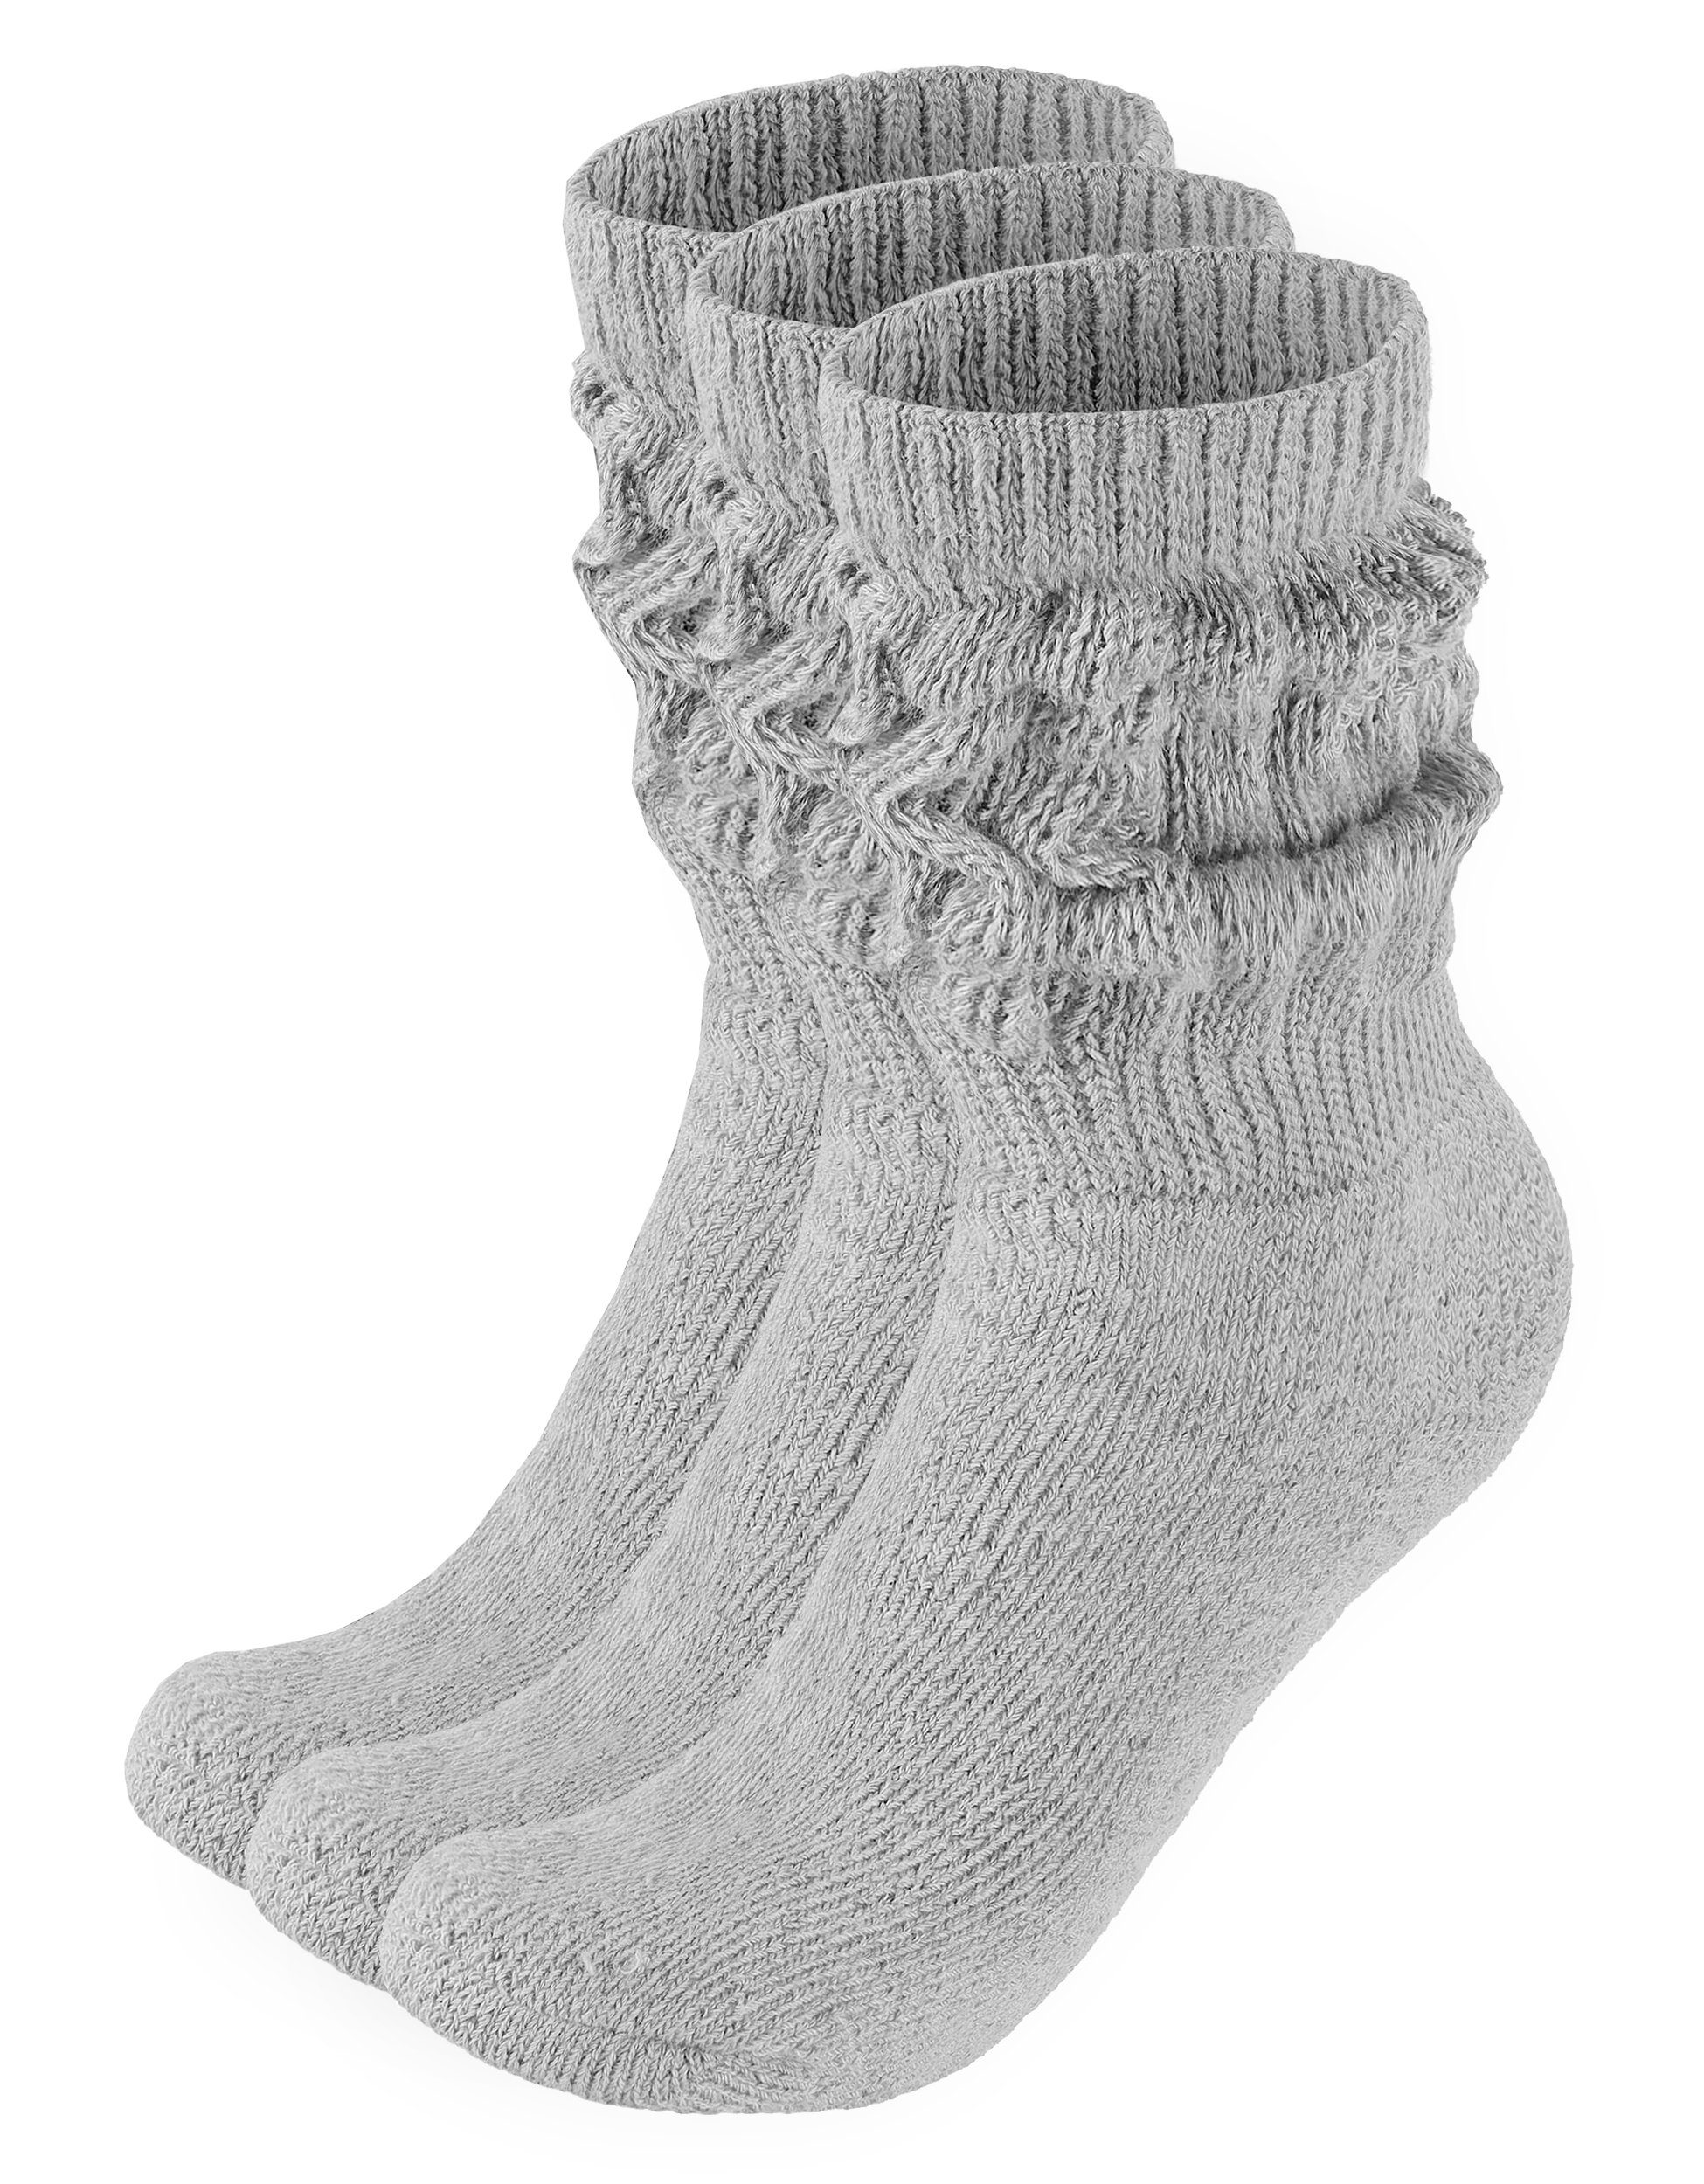 BRUBAKER Schoppersocken 3er Set Slouch Socken - Damen Baumwollsocken für Sport und Freizeit (3-Paar) Lässige Retro-Socken für Frauen - Scrunch Knit Damensocken 3x Grau